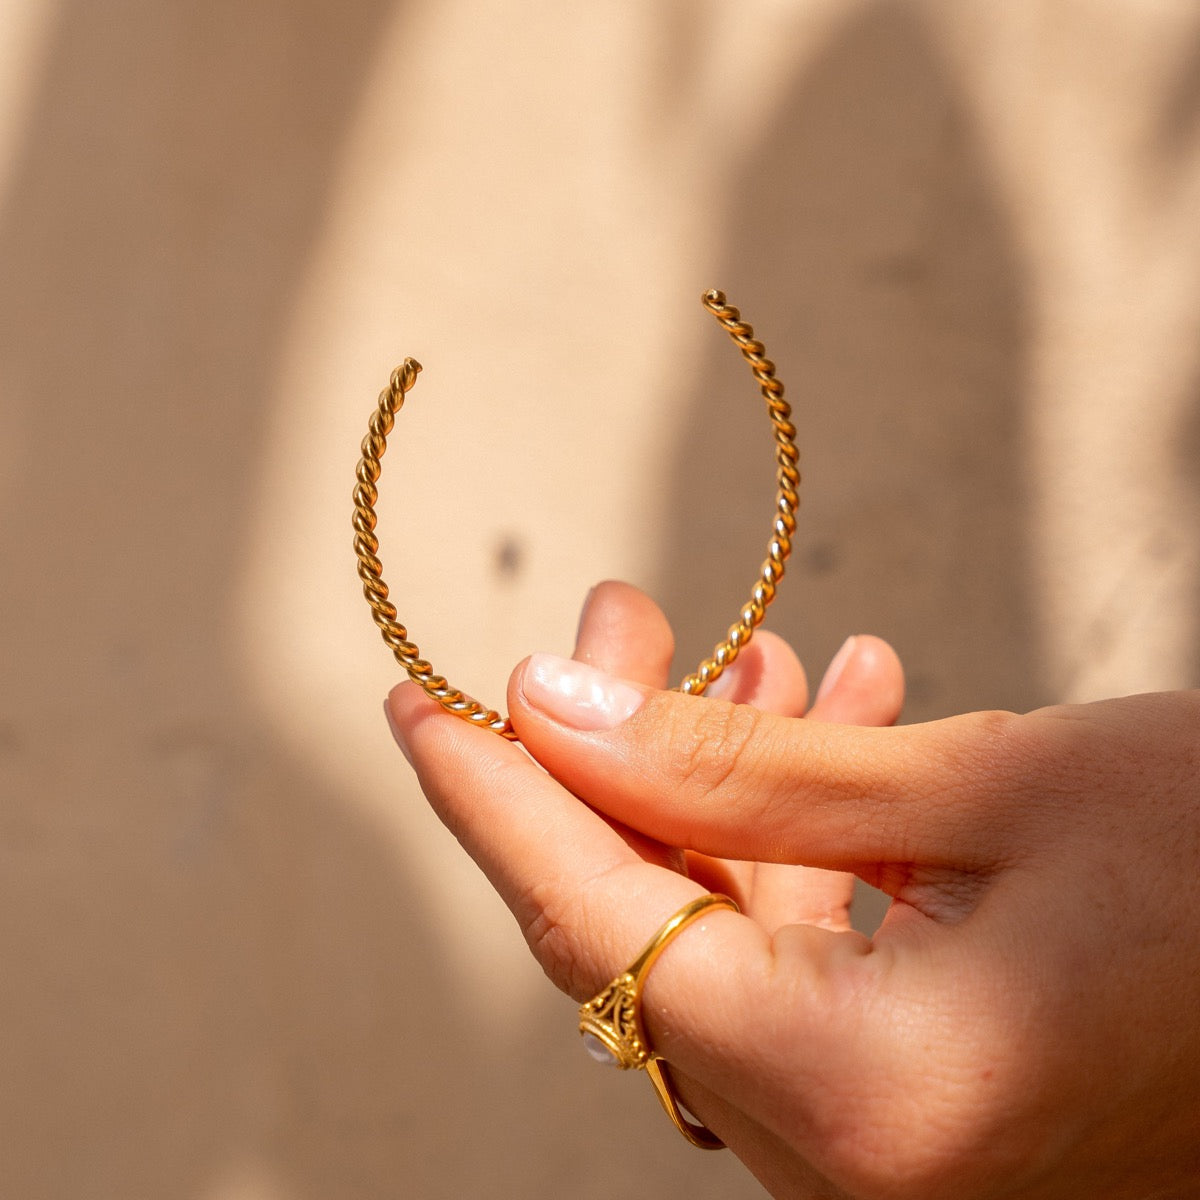 Spiral Bangle Bracelet - Gold